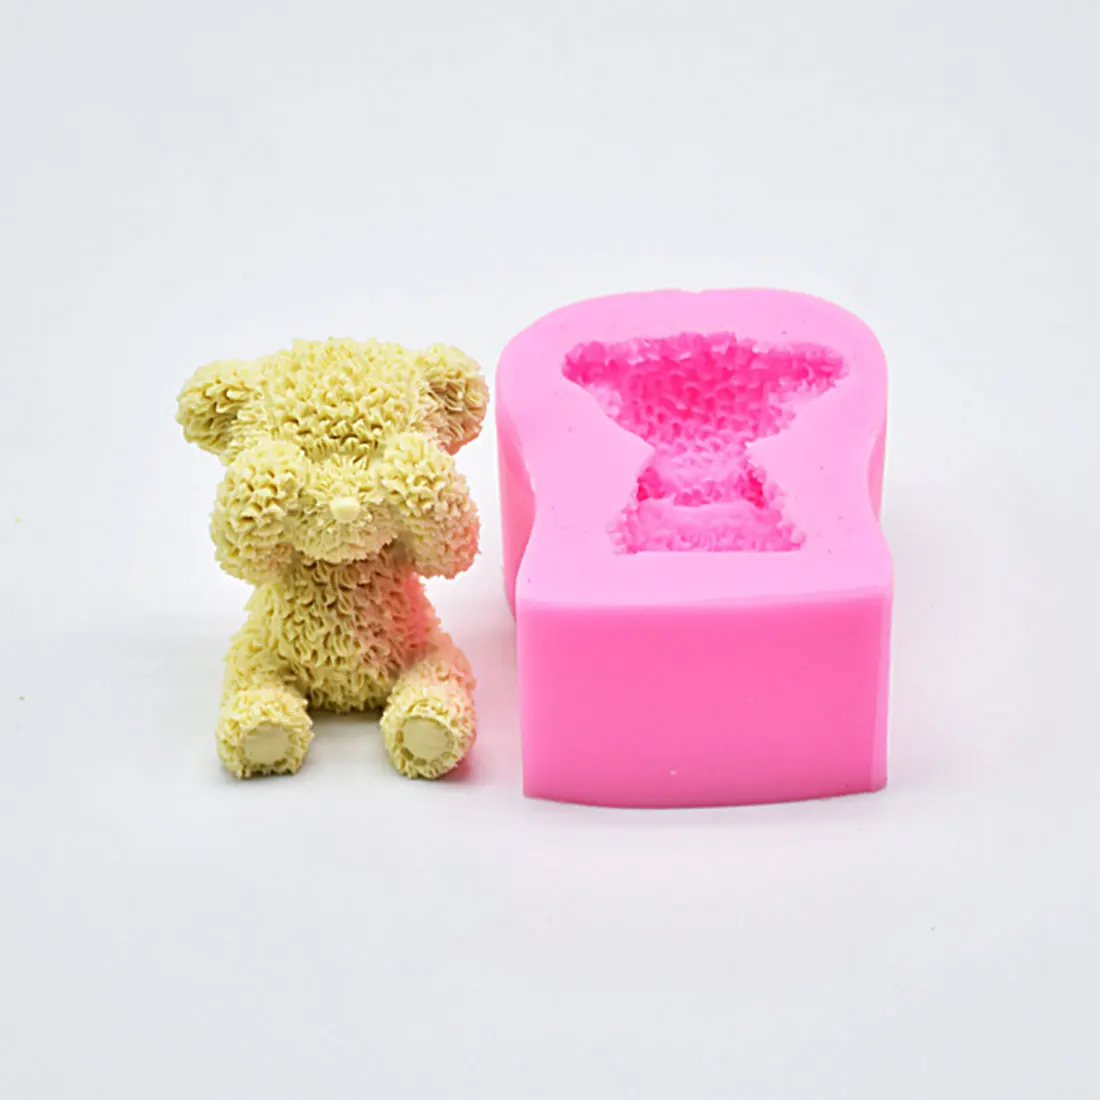 Best продажи Sugarcraft мини медведь силиконовые формы помадки плесень торт отделочных работ шоколад мыло формы